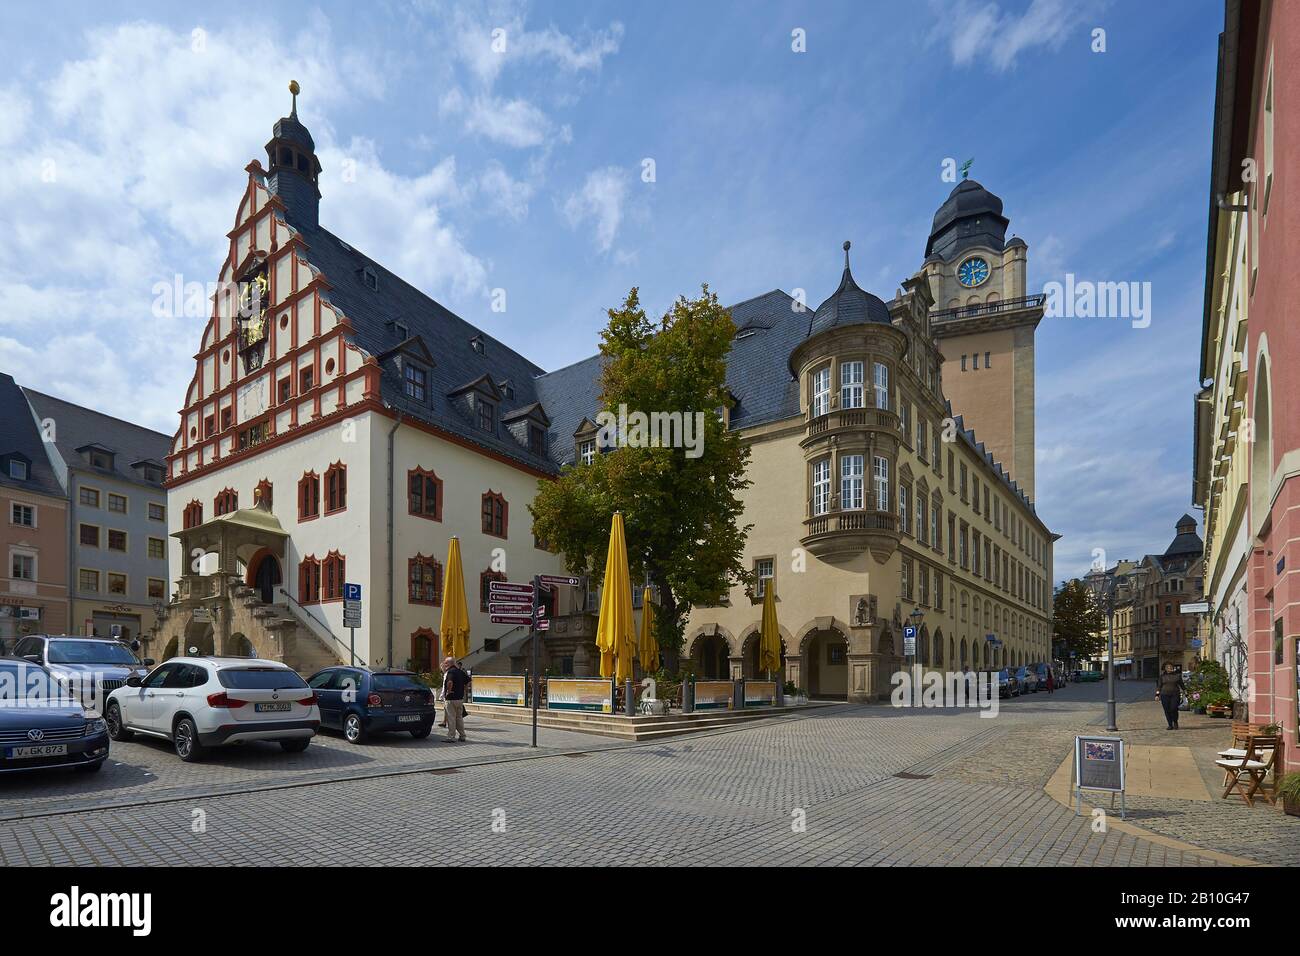 Rathaus am Altmarkt in Plauen, Vogtland, Sachsen, Deutschland Stockfoto